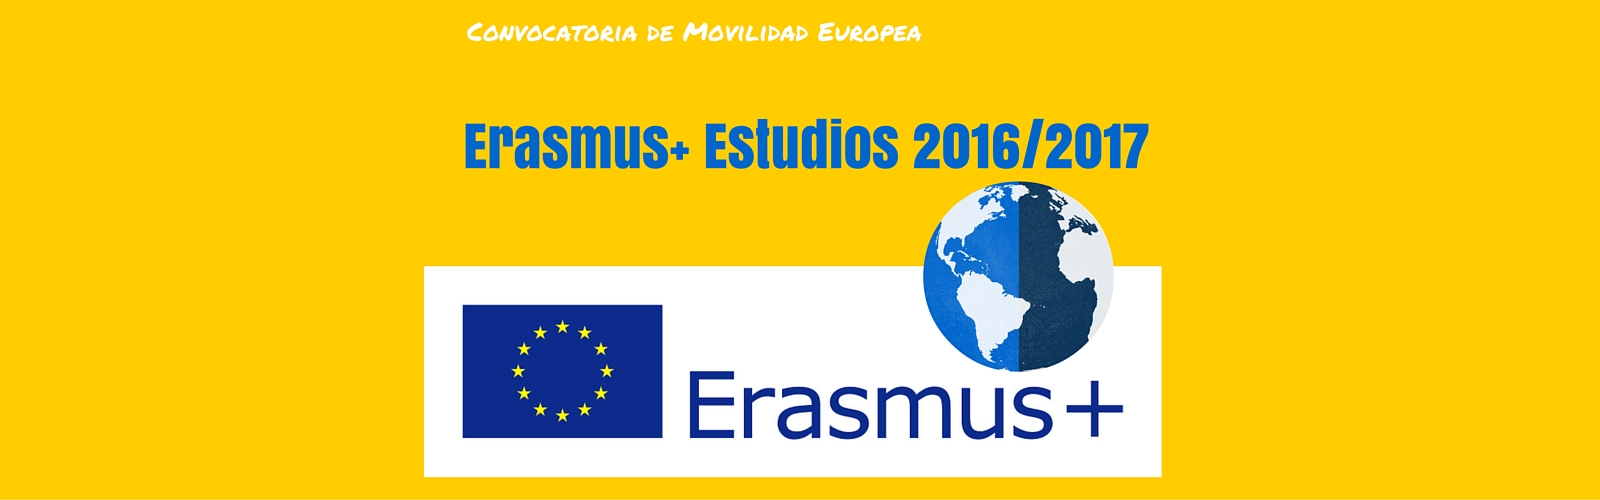 Convocatoria de Movilidad Europea Erasmus+ Estudios 2016/2017